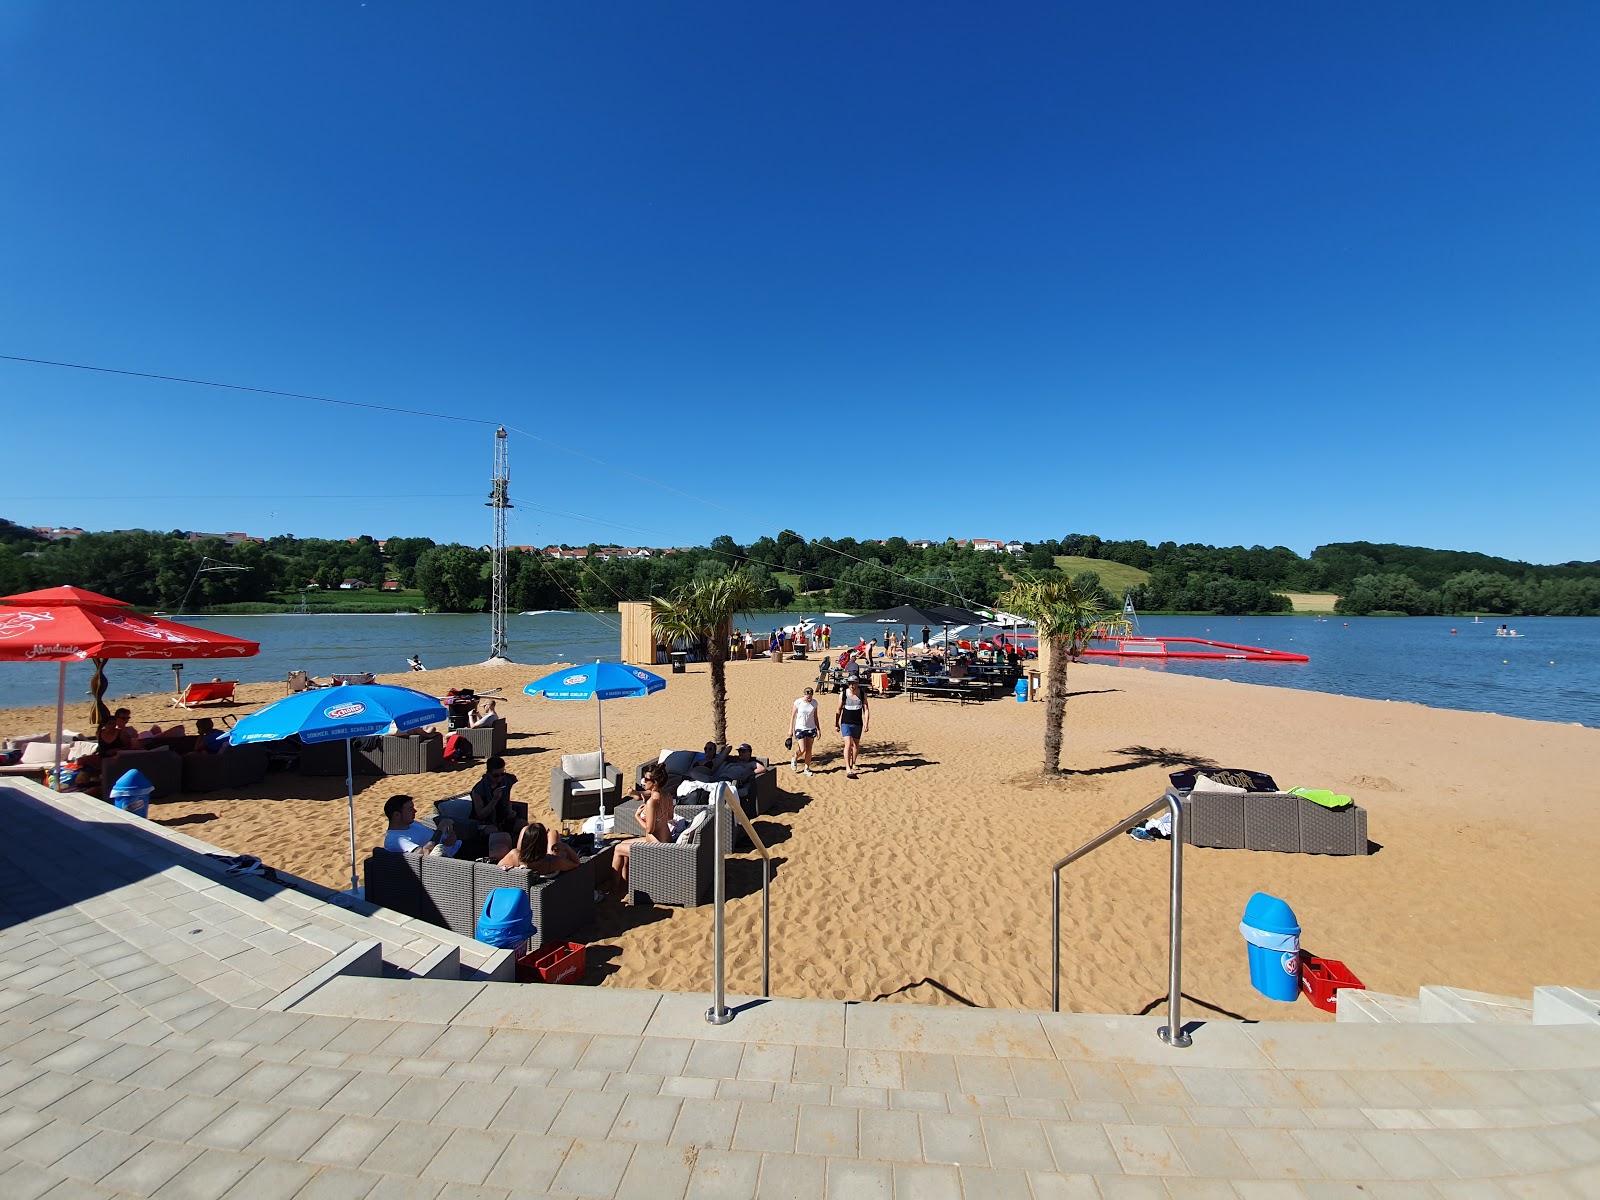 Fotografija Spielplatz Wakepark Brombachsee z prostorna obala